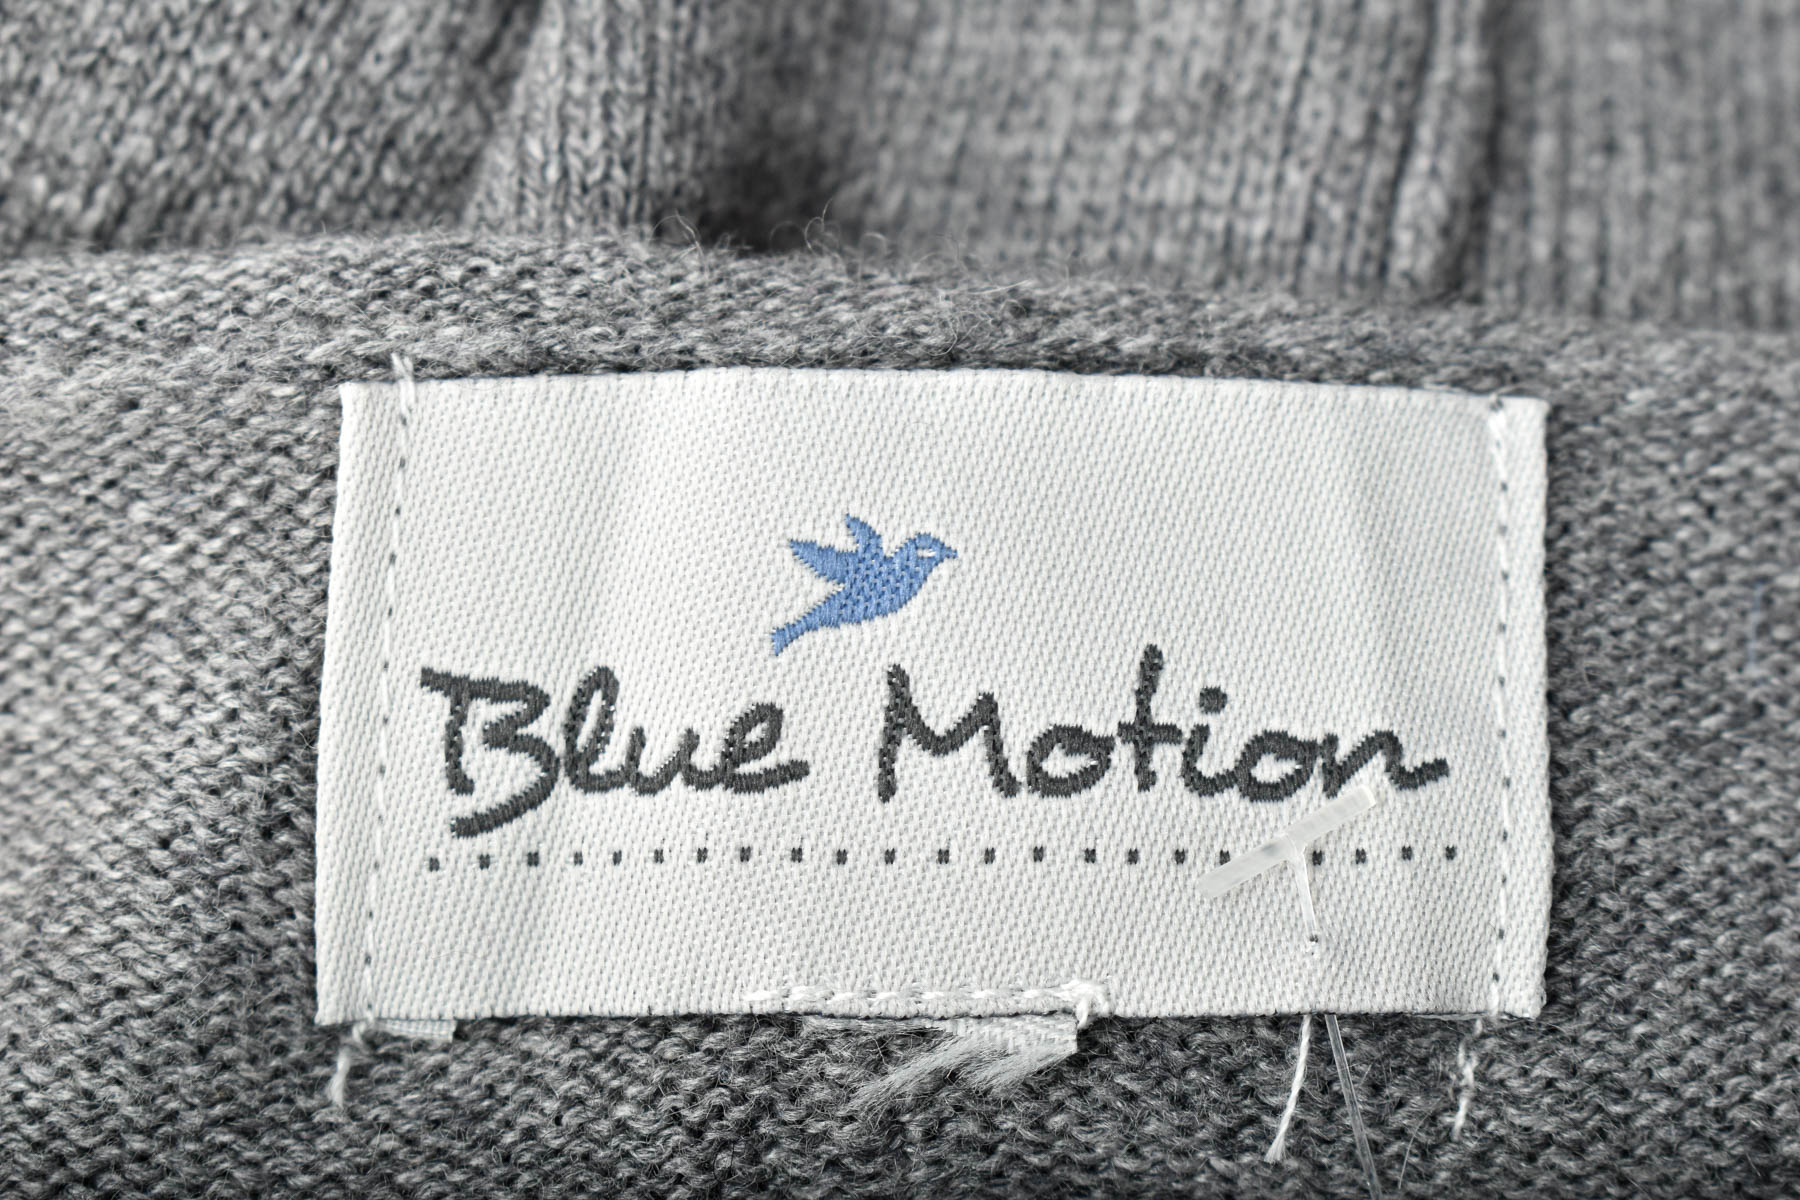 Рокля - Blue Motion - 2